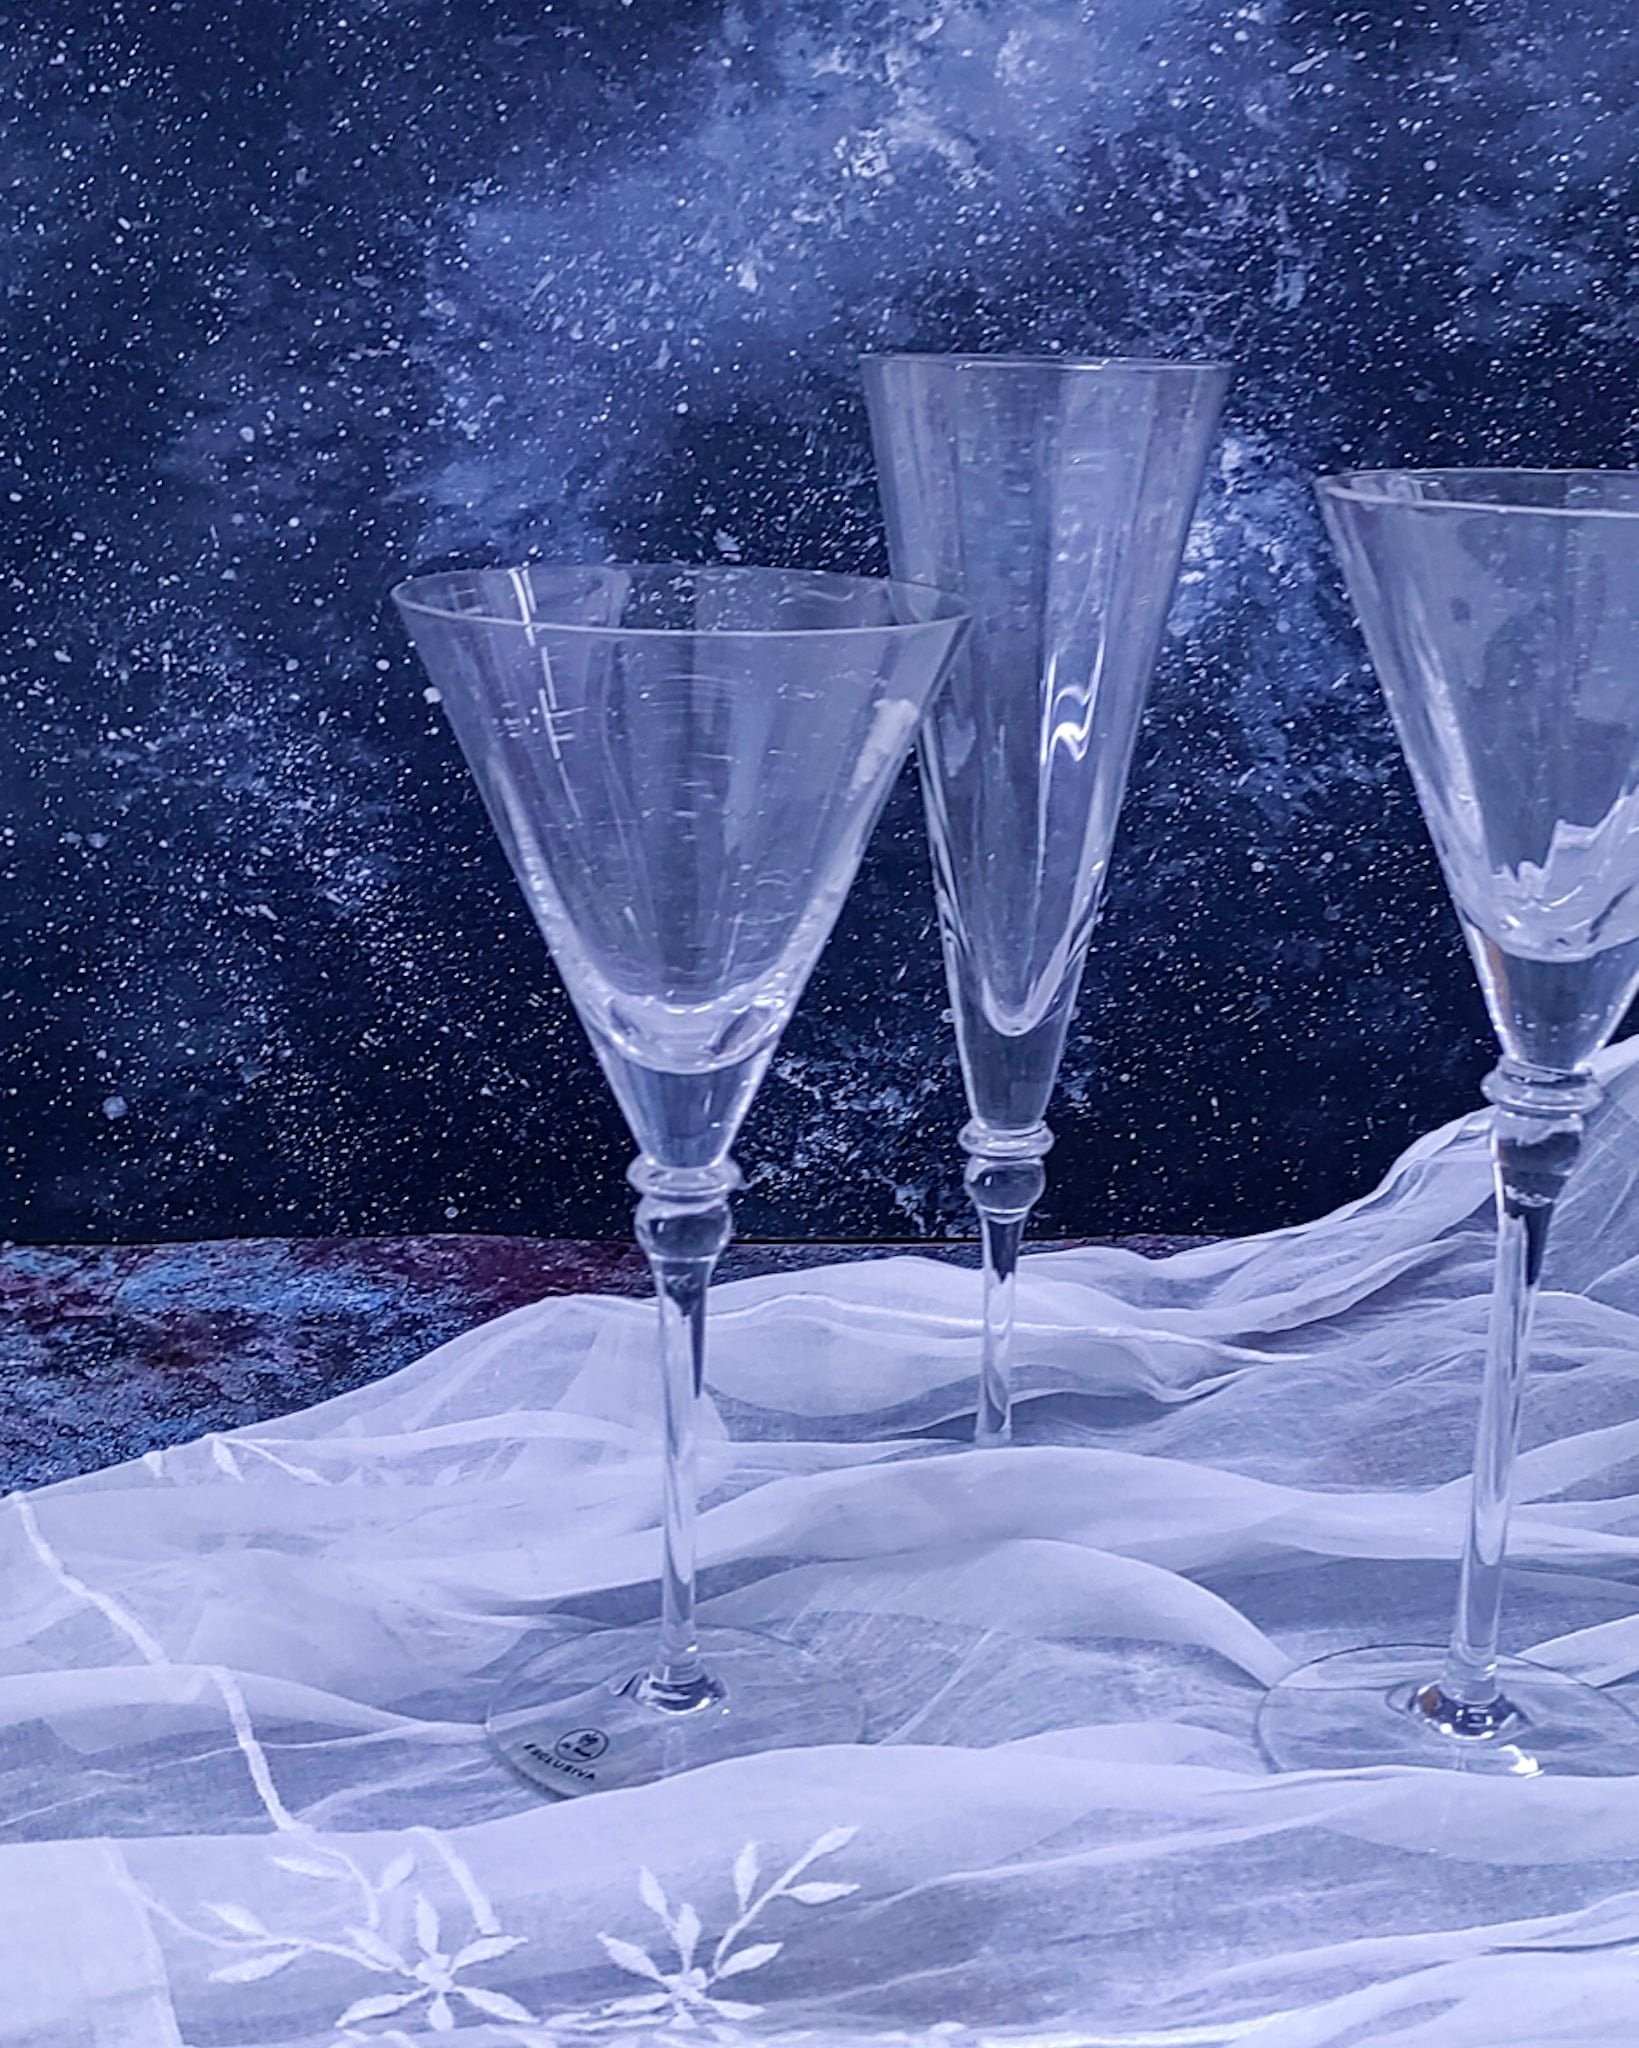 Servizio bicchieri in cristallo per 12 persone tay oblioy - OIKO  CRISTALLERIE